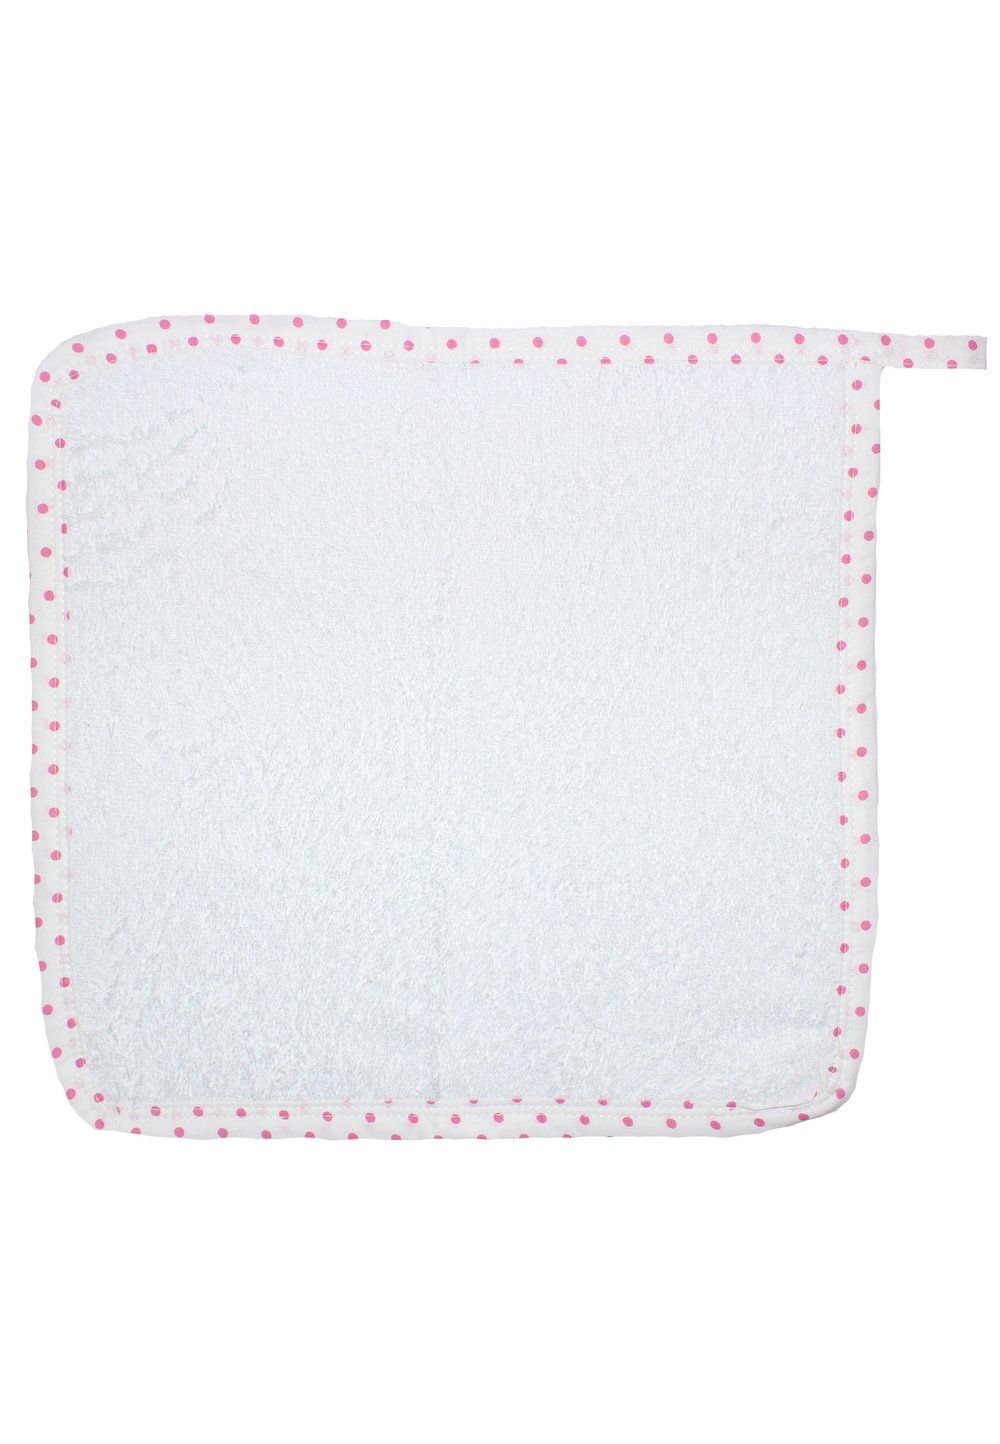 Prosop de maini alb cu buline roz, 30×30 cm 30x30